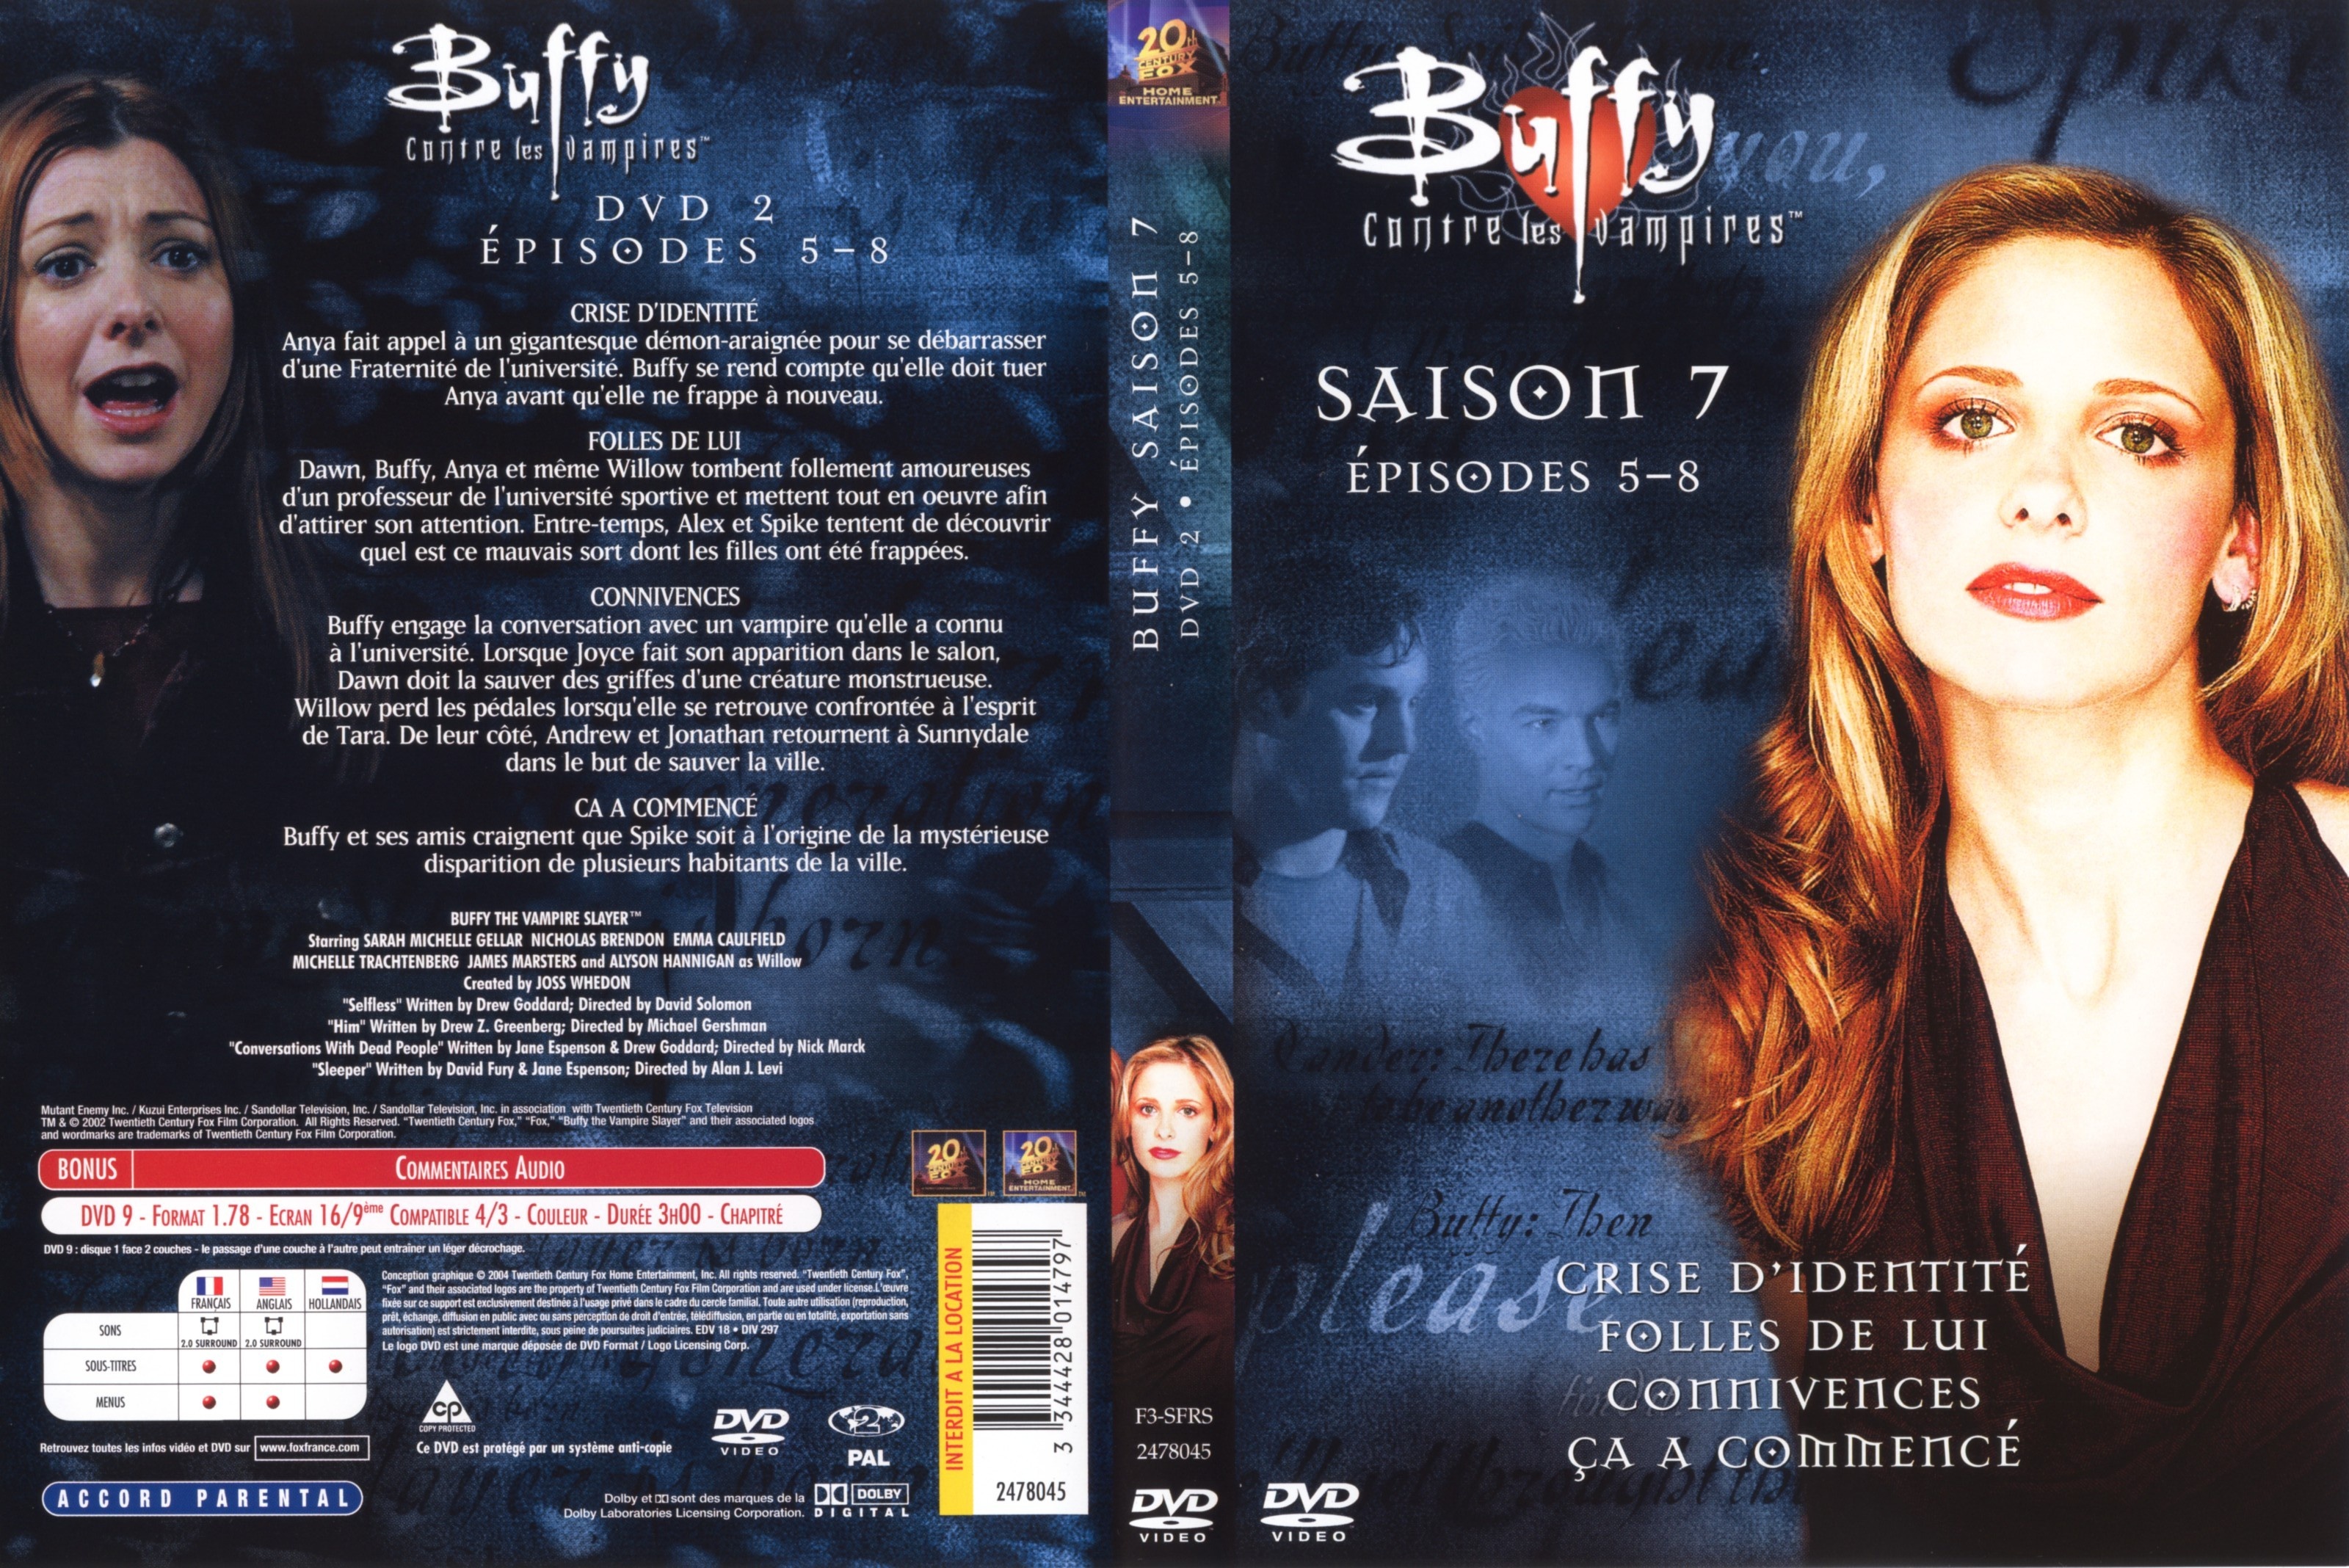 Jaquette DVD Buffy contre les vampires Saison 7 DVD 2